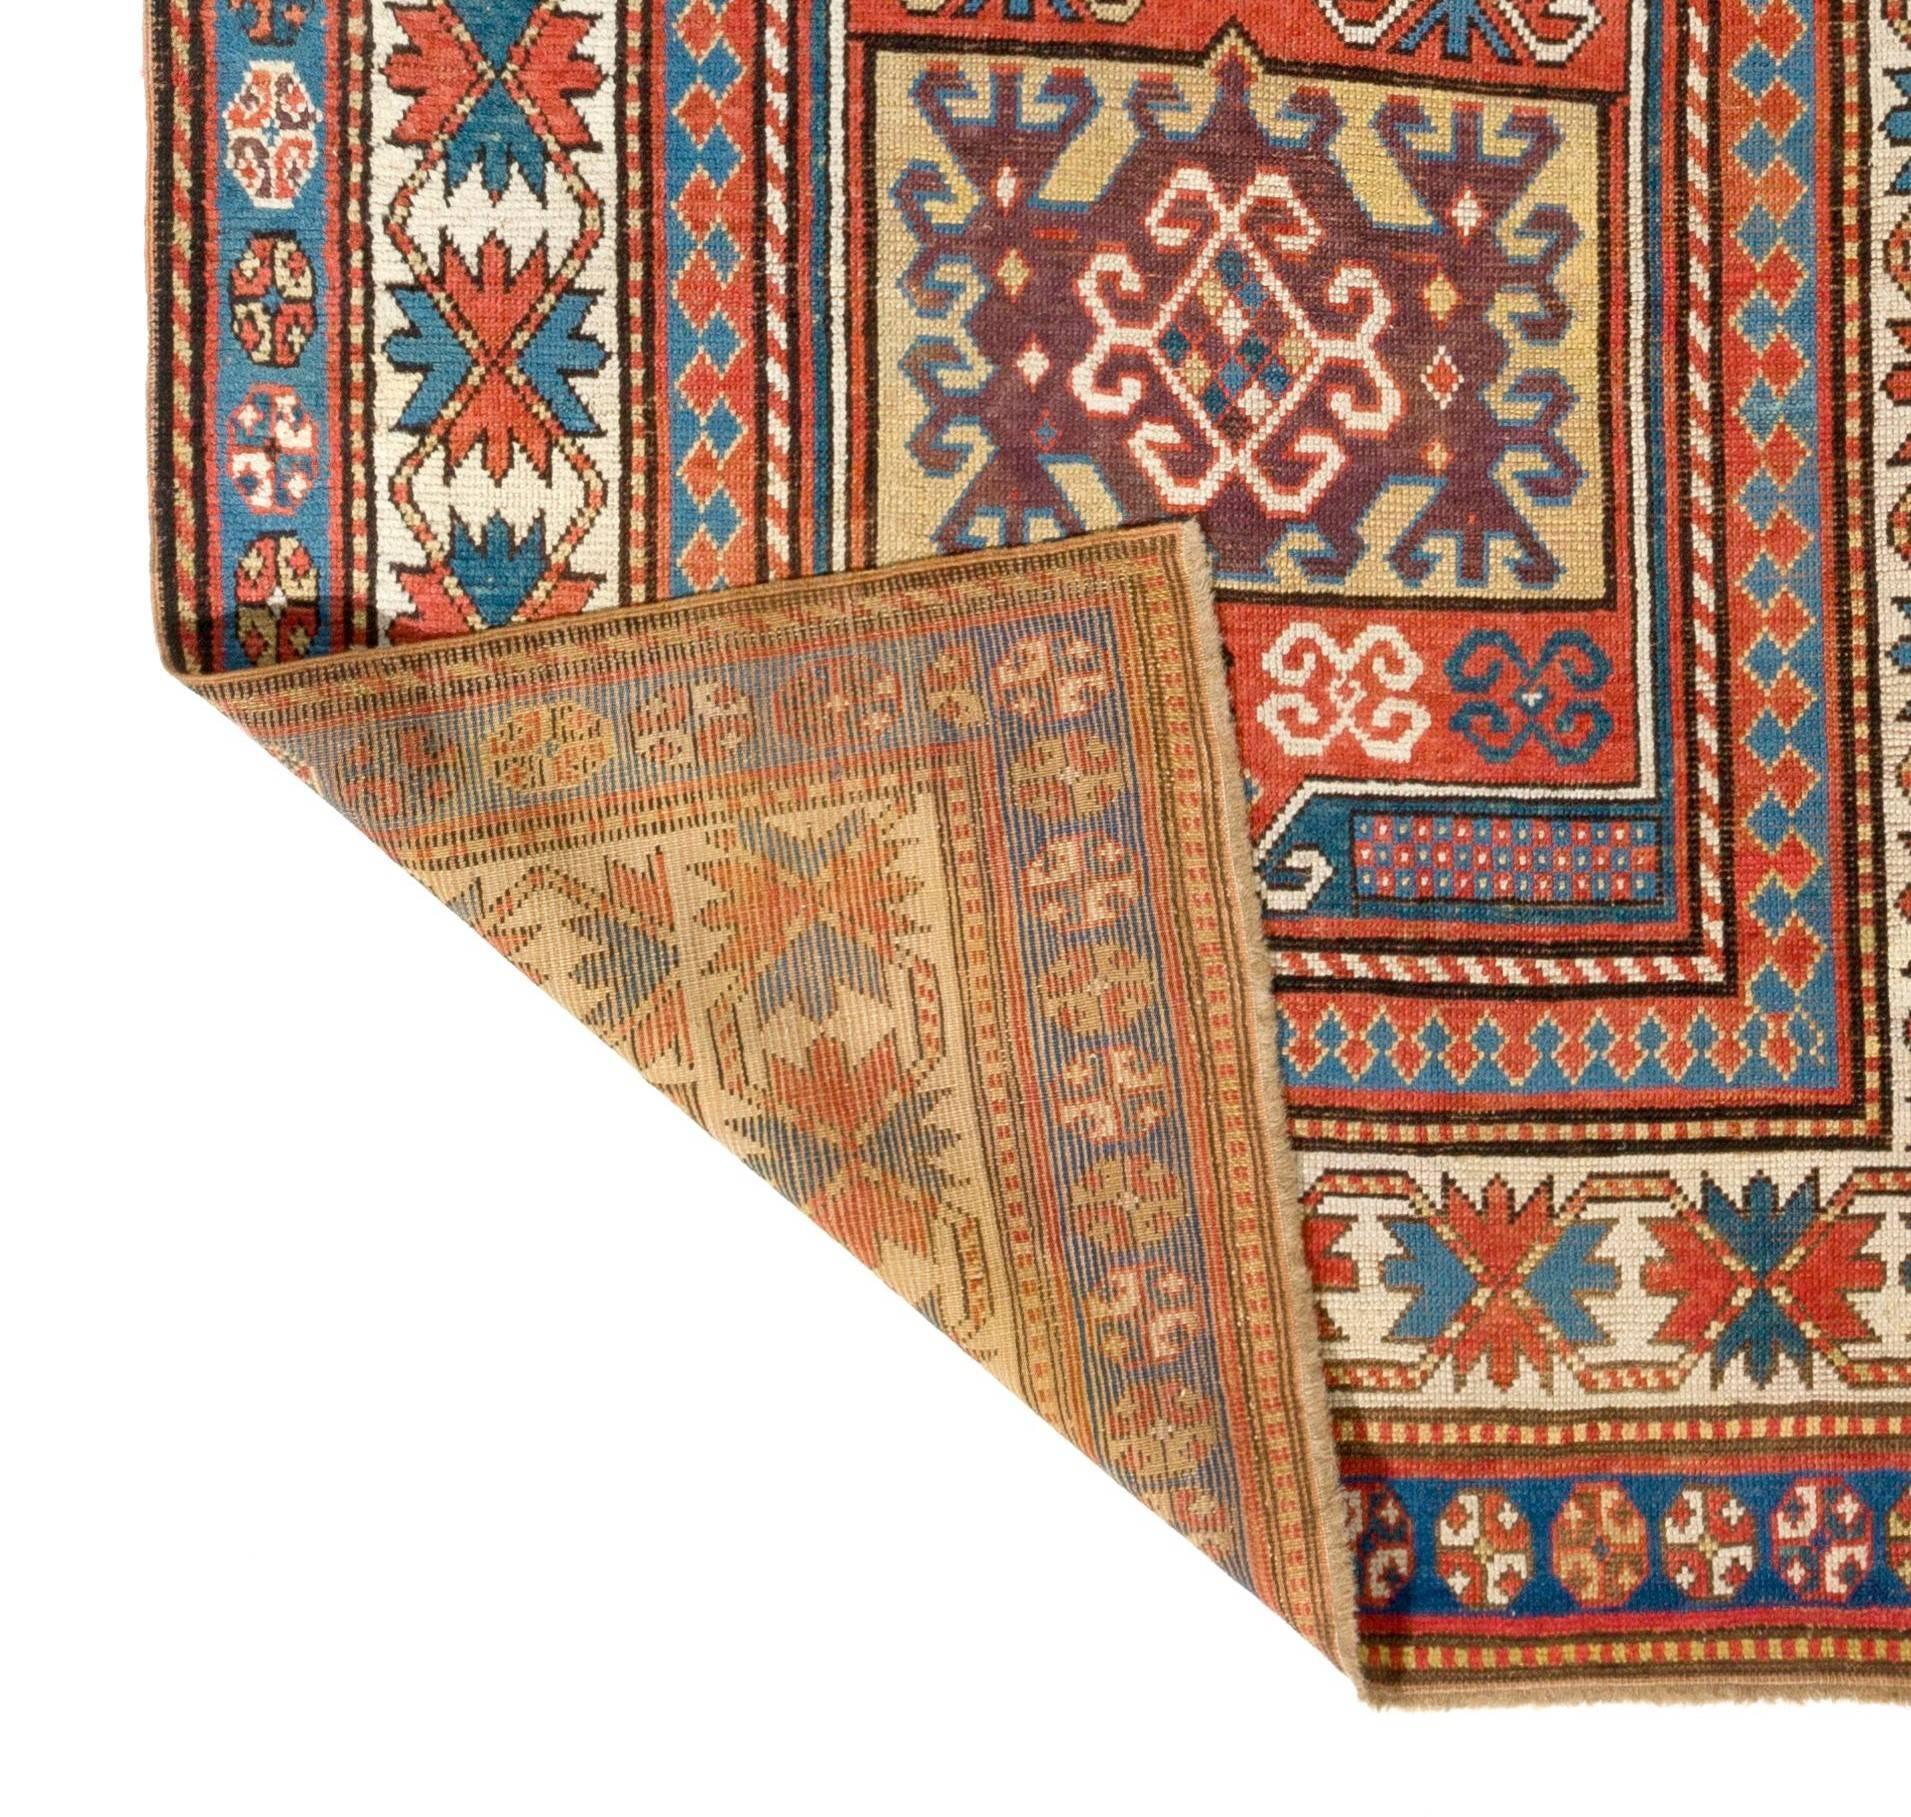 Antiker kaukasischer Kazak-Teppich. Fein handgeknüpft mit gleichmäßigem, mittelhohem Wollflor auf Wollbasis. Sehr guter Zustand, keine Probleme, professionell gewaschen.  Maße: 4 x 8 ft.